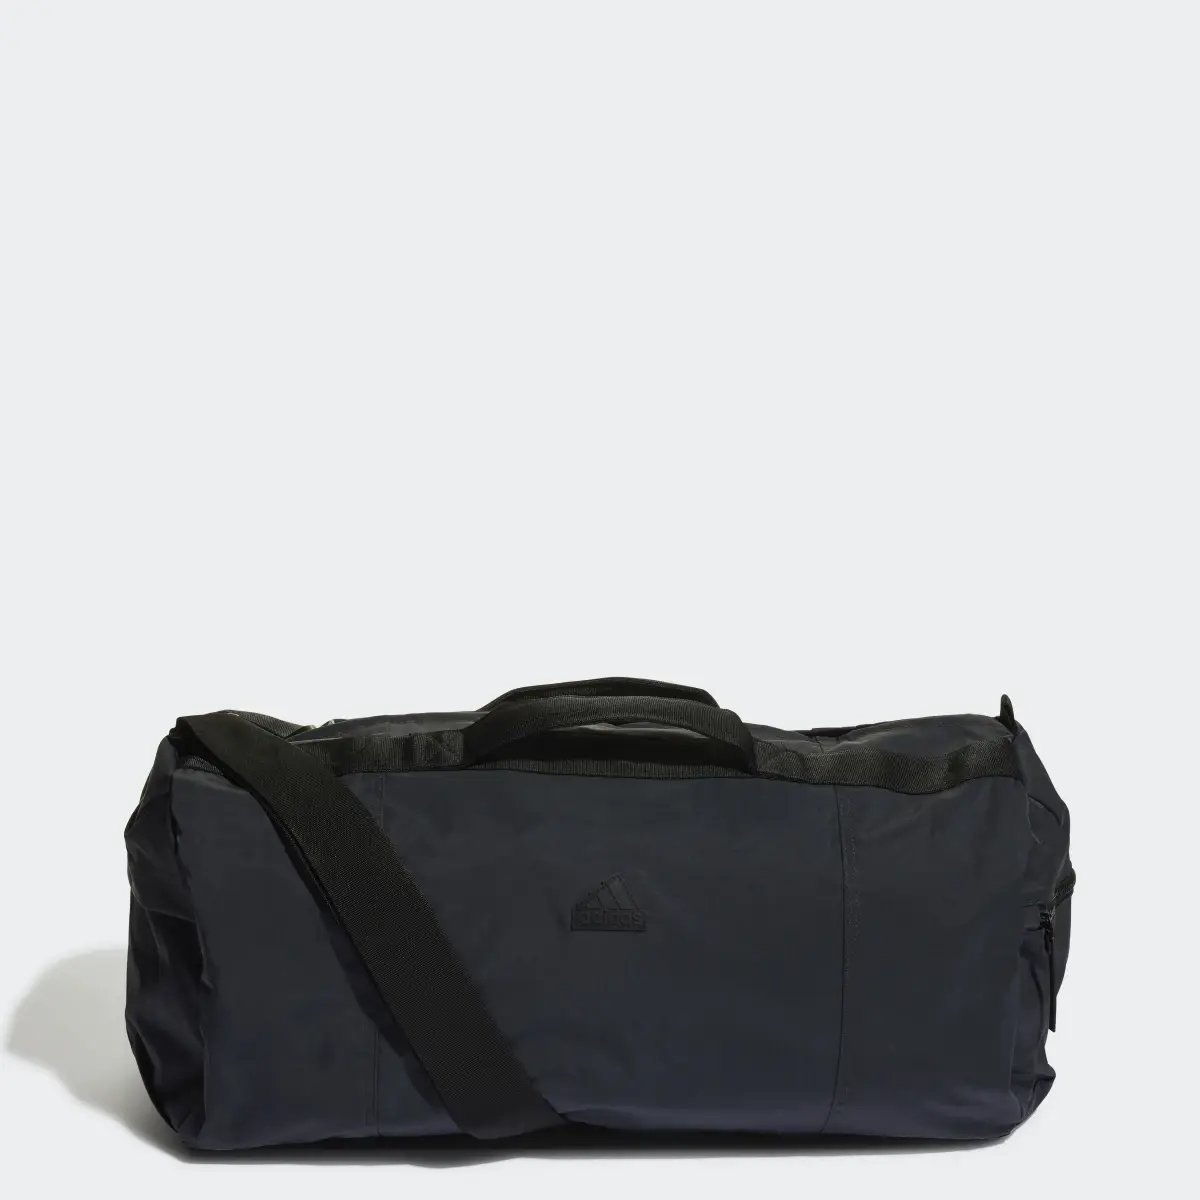 Adidas Weekender Bag. 1